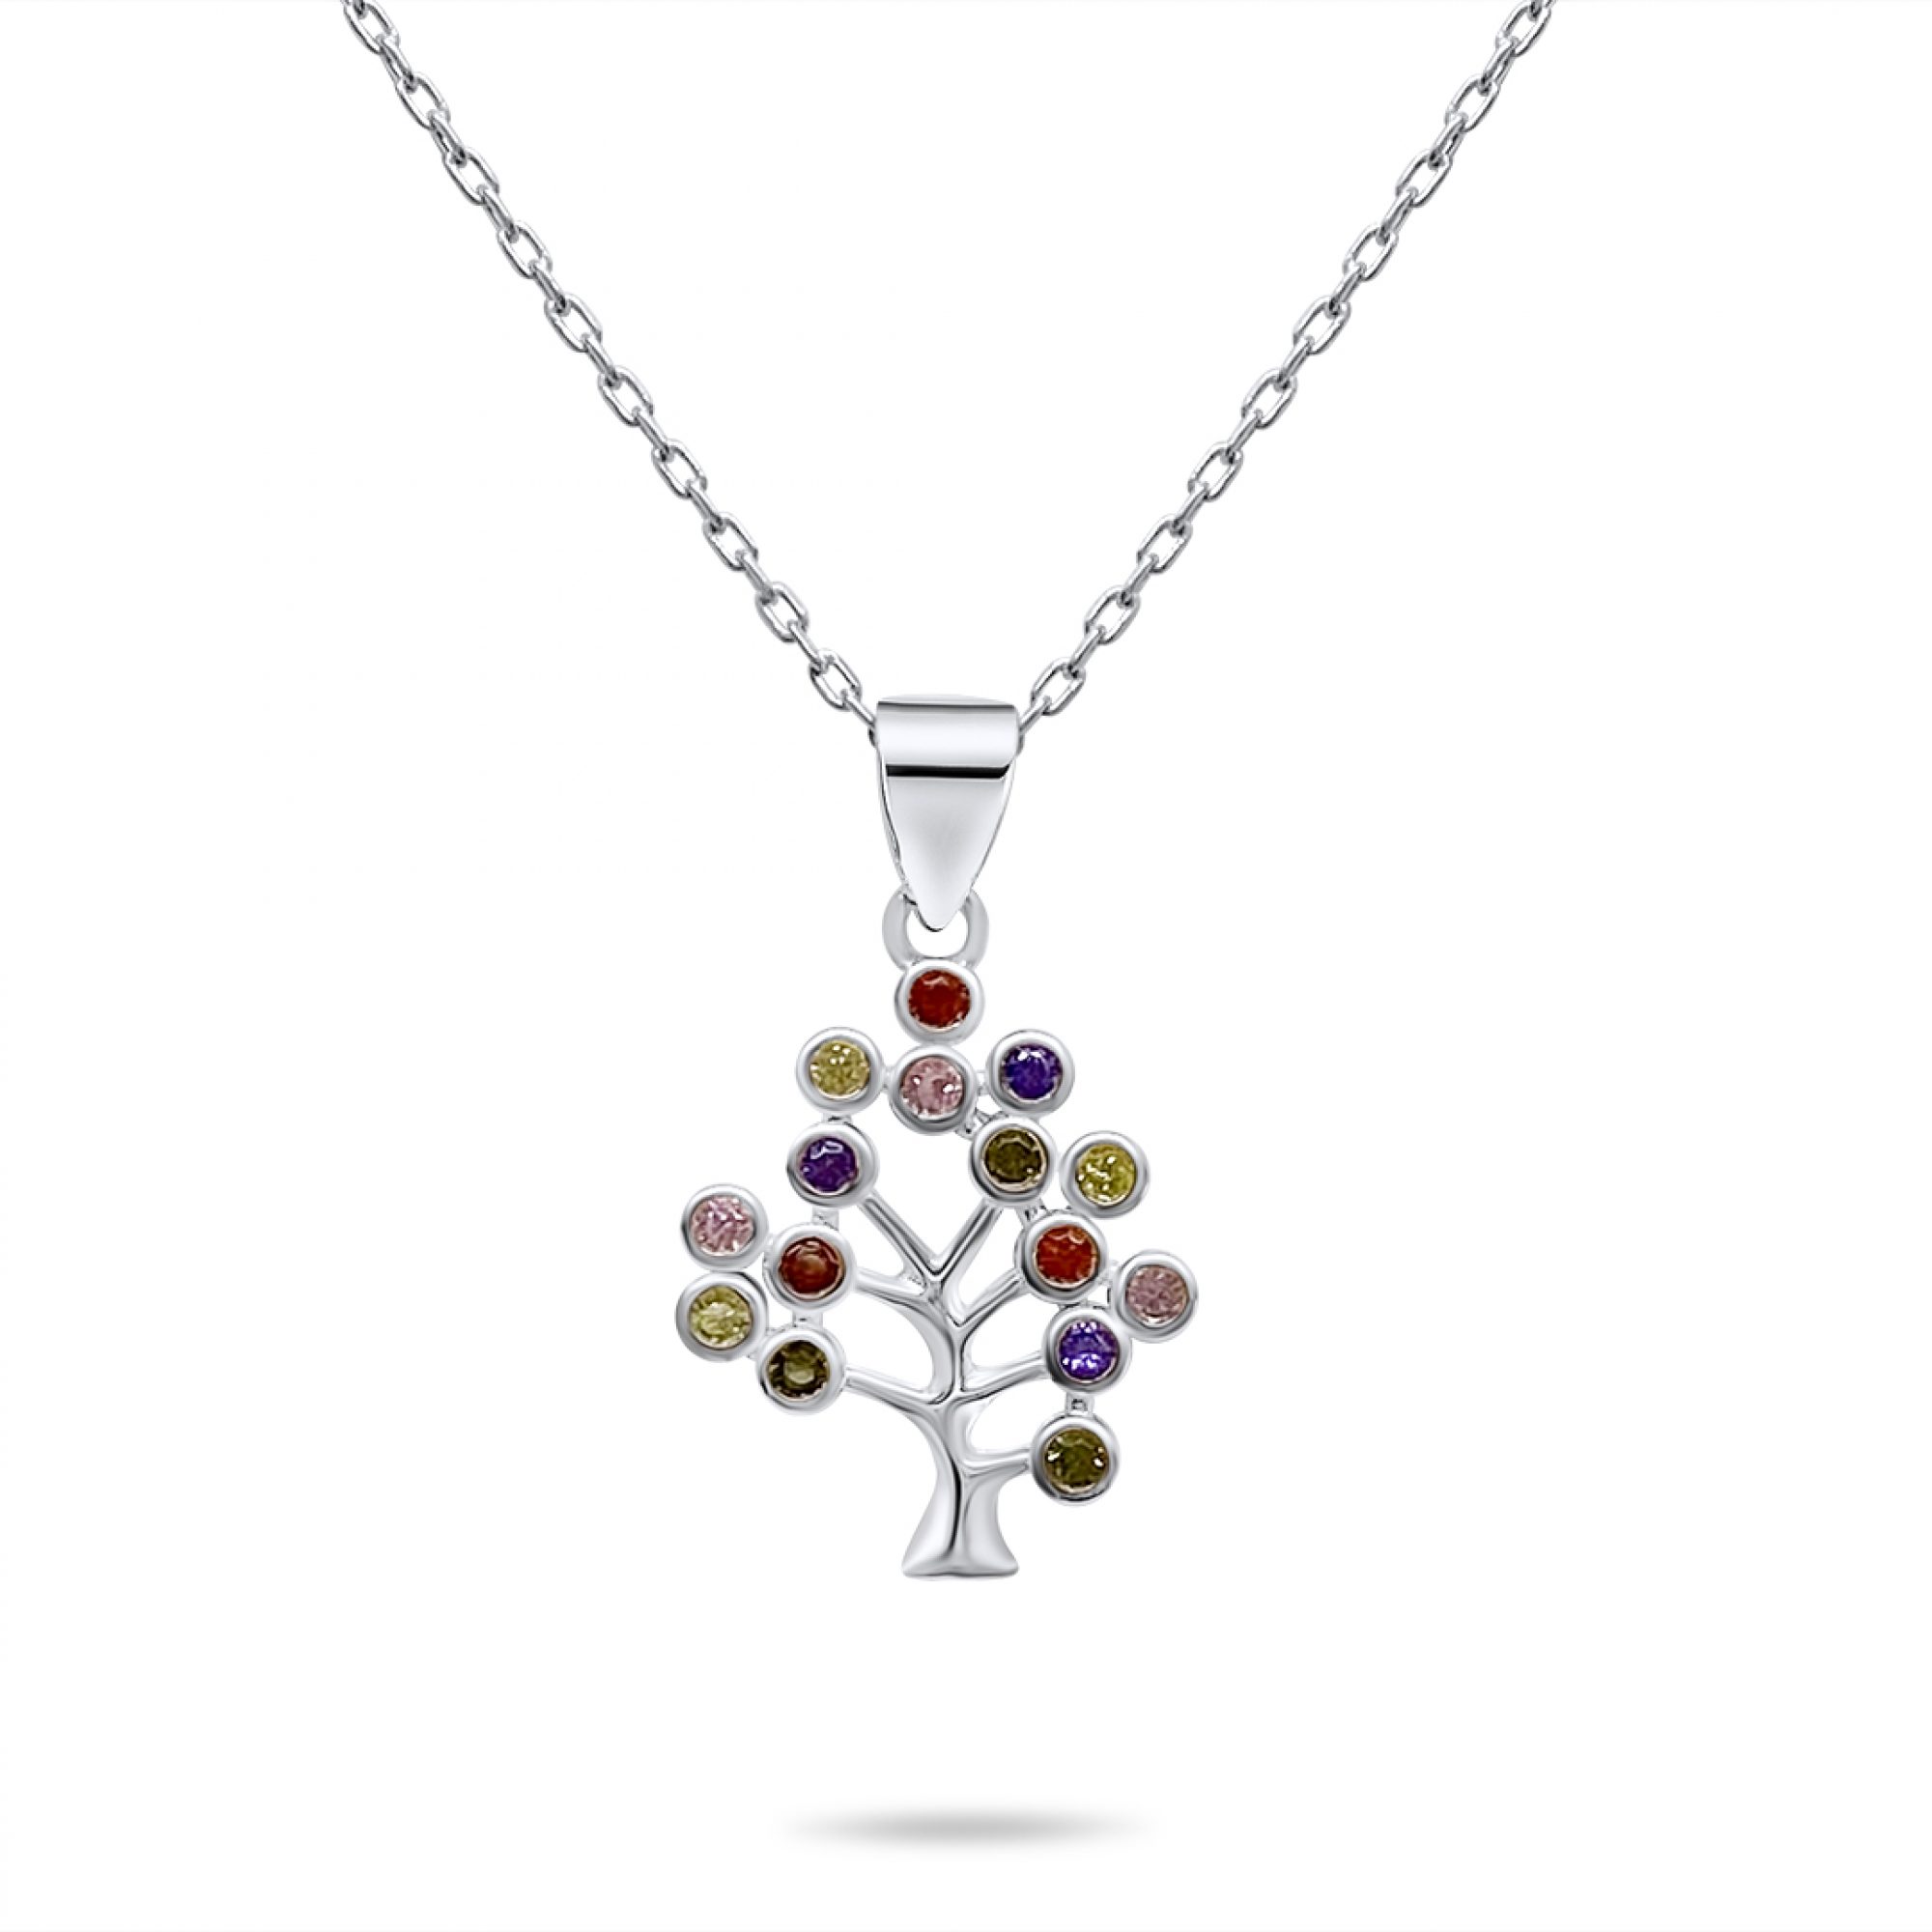 Tree of life necklace with zircon stones